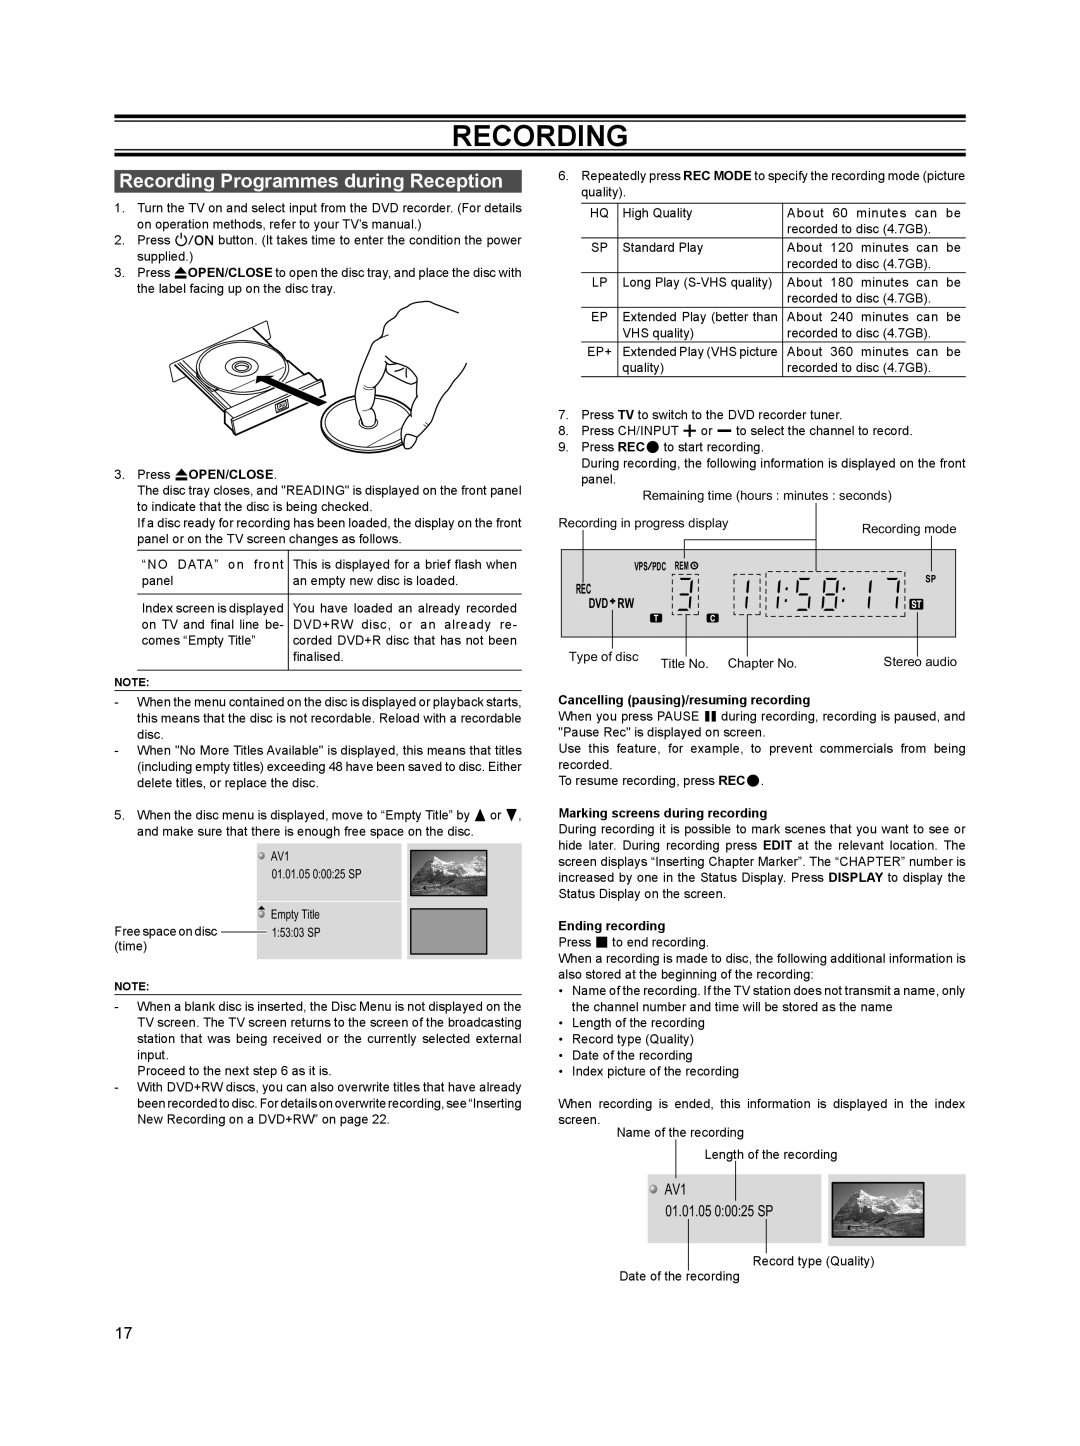 Sanyo DVR-HT120 instruction manual Recording Programmes during Reception, AV1 01.01.05 0 00 25 SP 